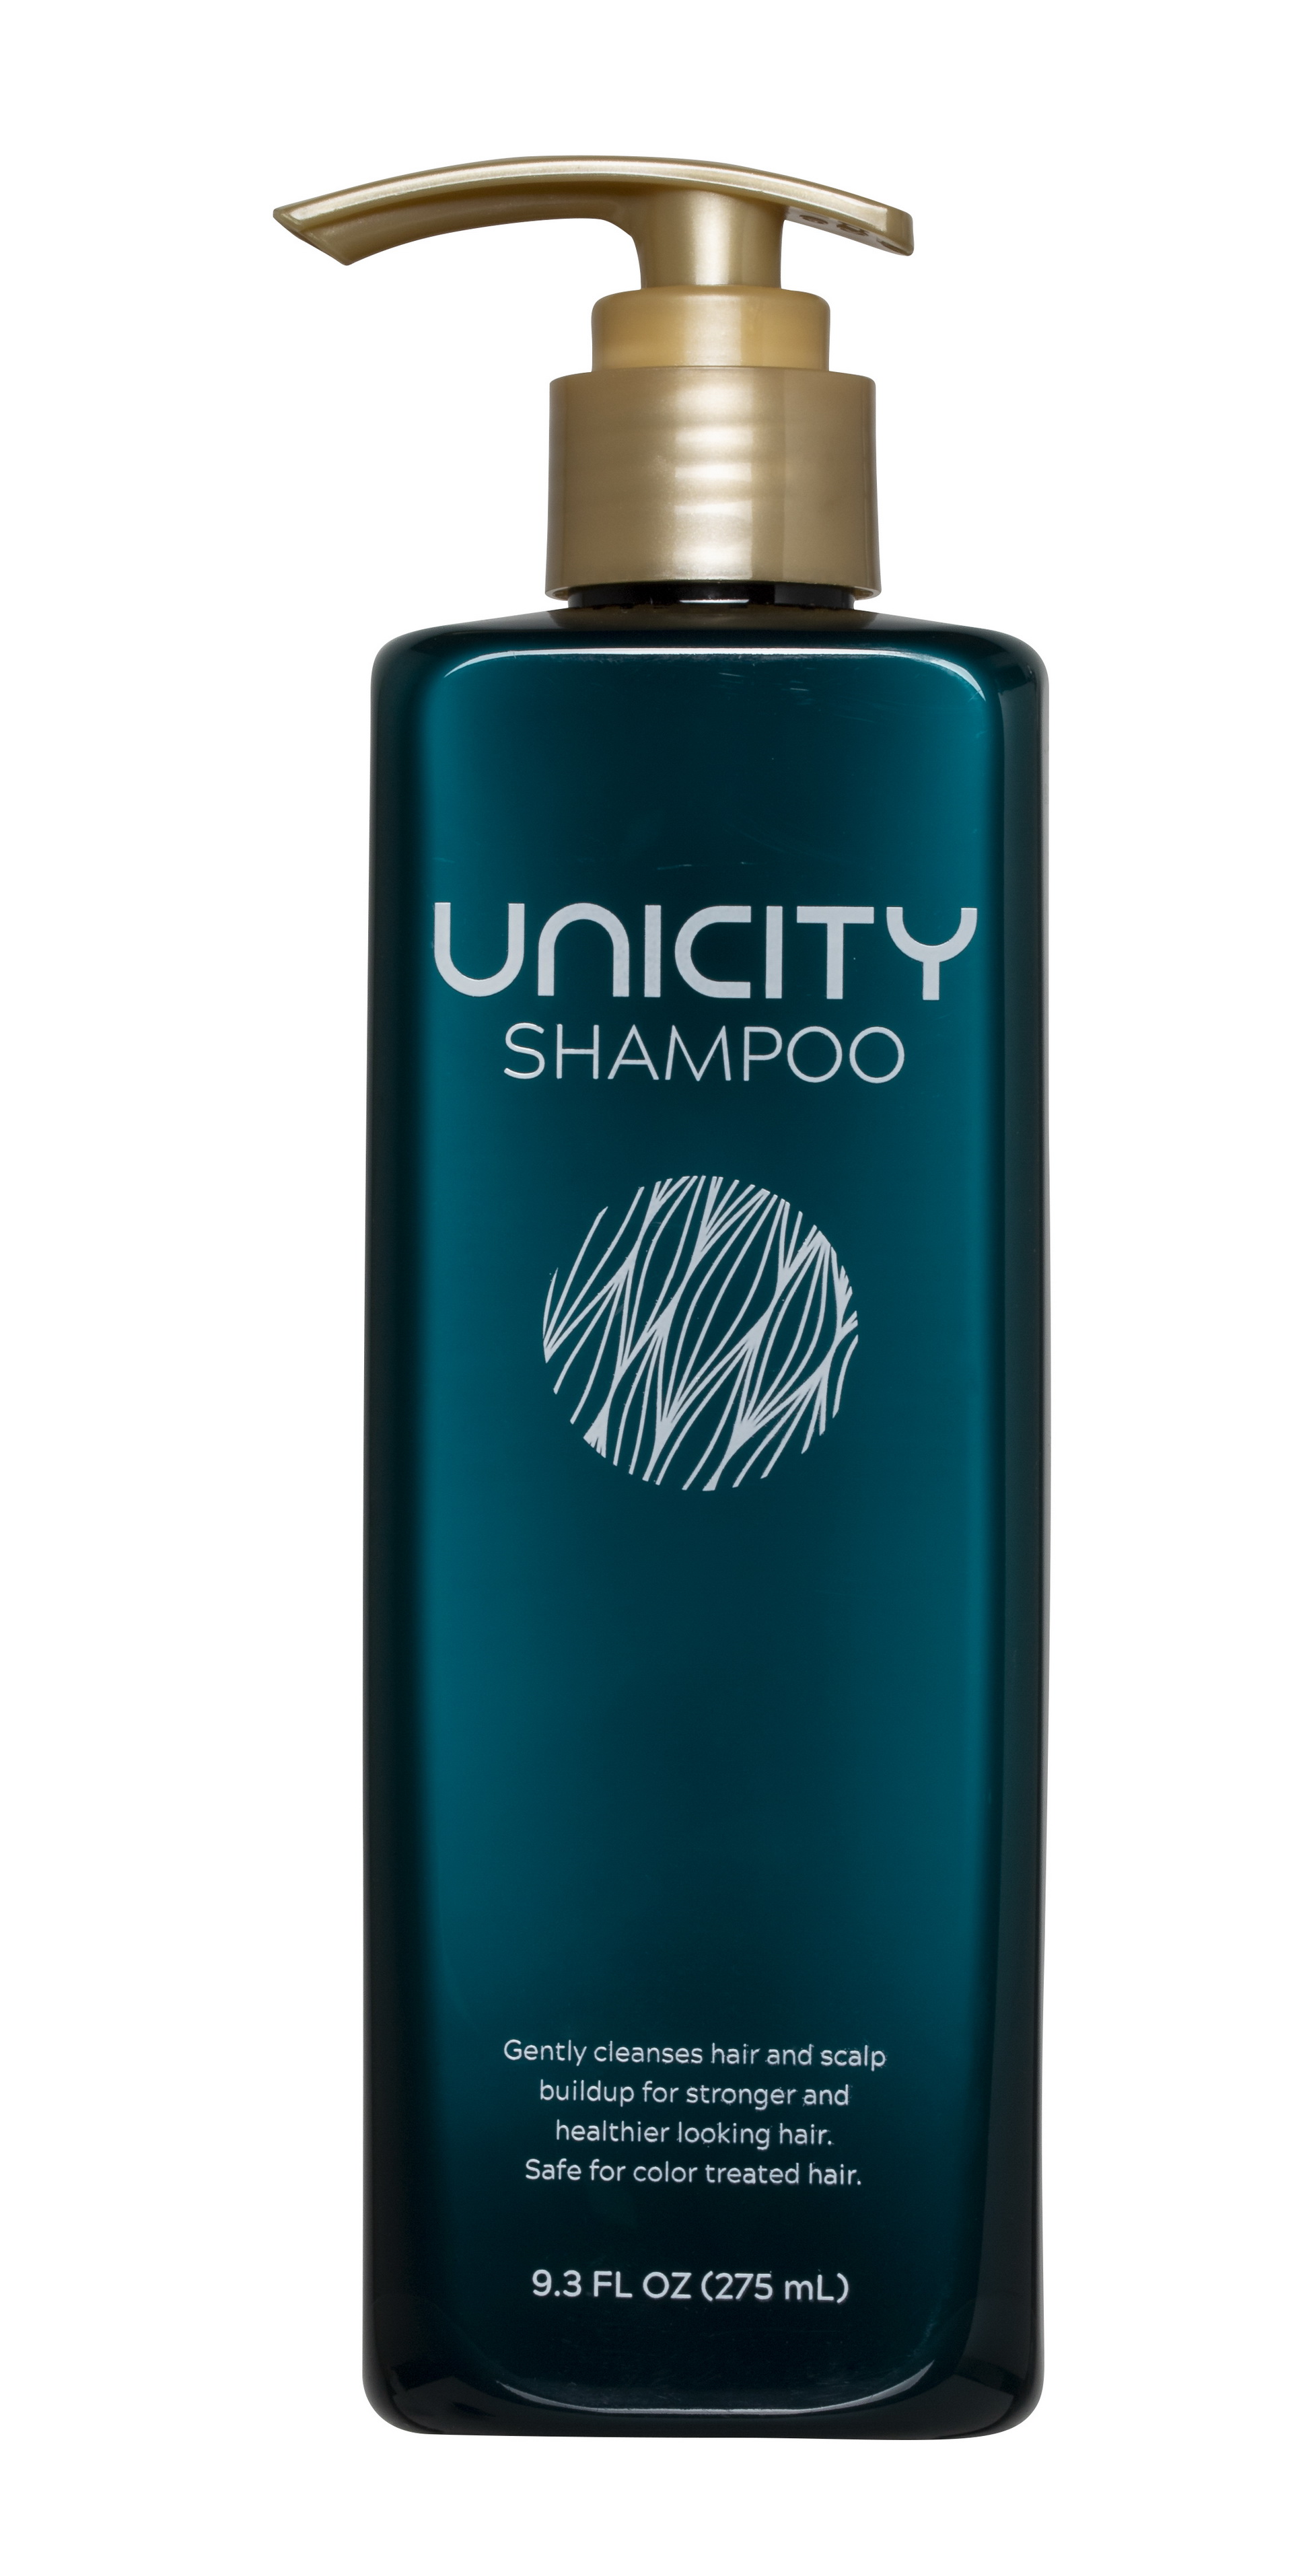 ยูนิซิตี้เปิดตัว 2 ผลิตภัณฑ์ดูแลเส้นผมและหนังศีรษะใหม่ล่าสุด Unicity Shampoo และ Unicity Conditioner